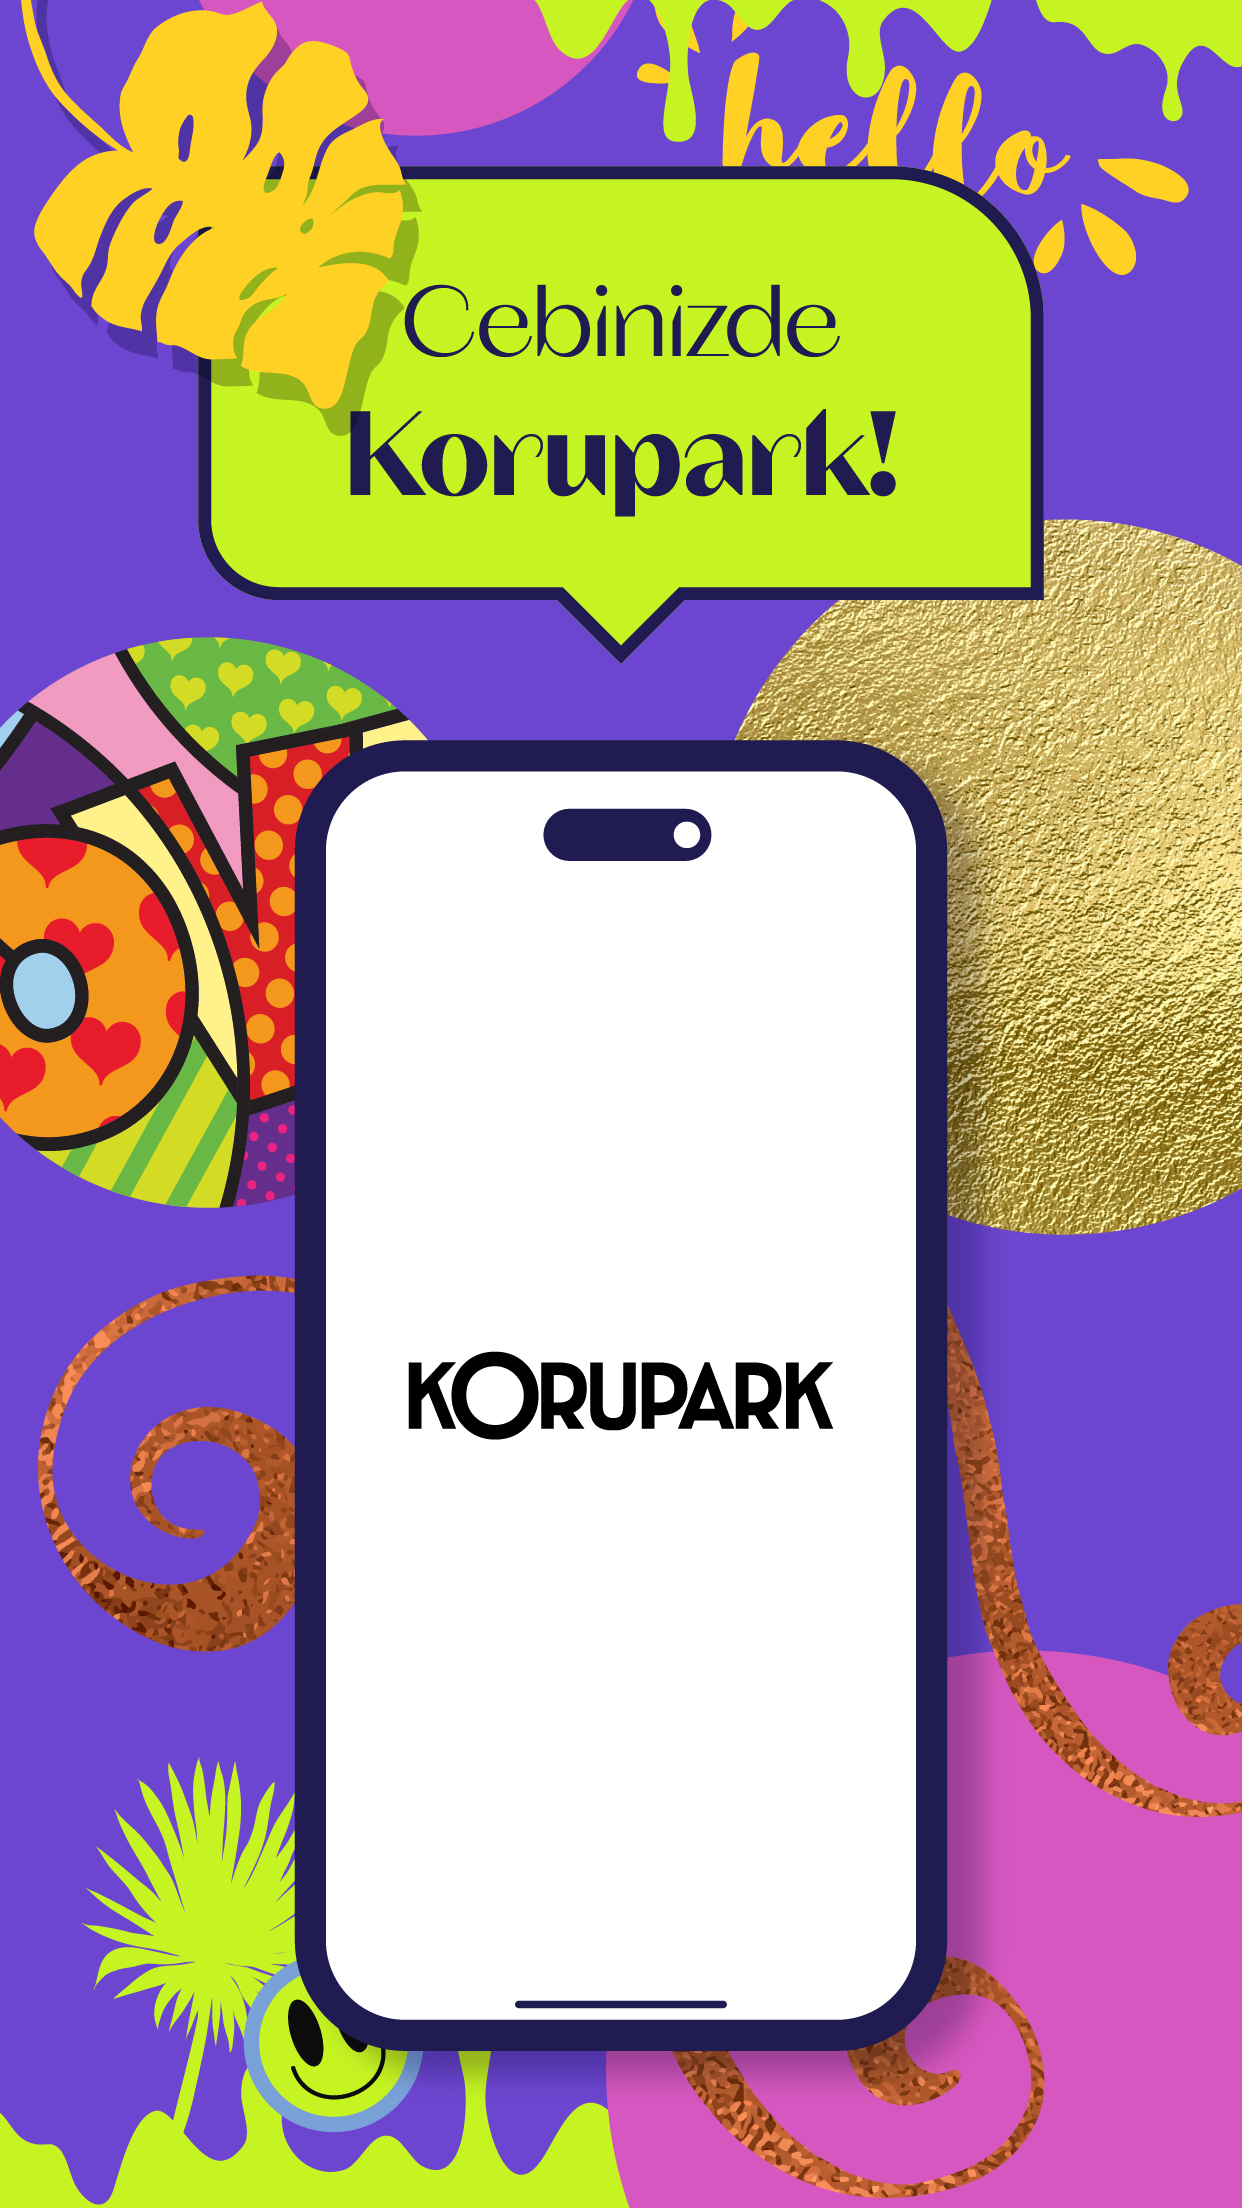 Mobile App Korupark Image